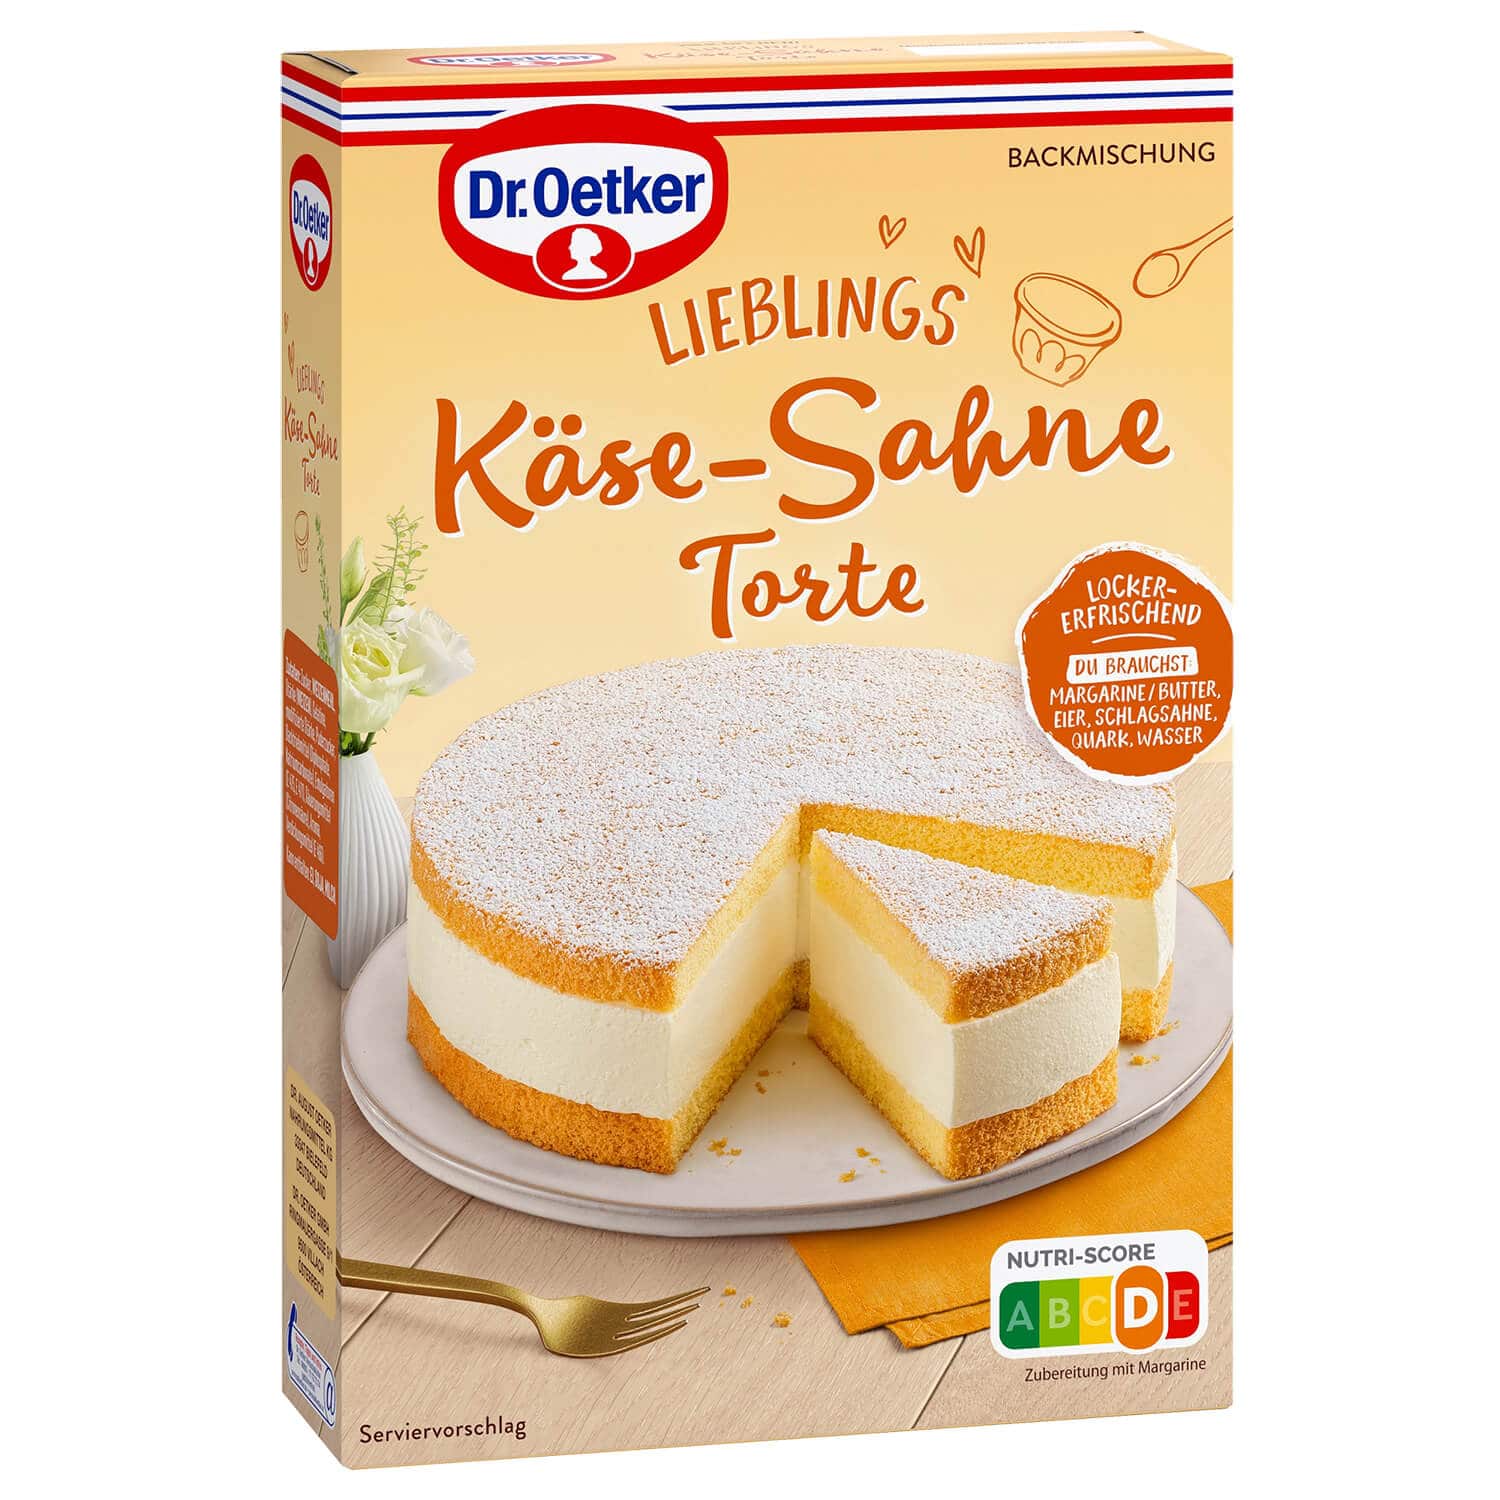 Dr Oetker Käse-Sahne Torte Backmischung 385g - Candyshop.ch